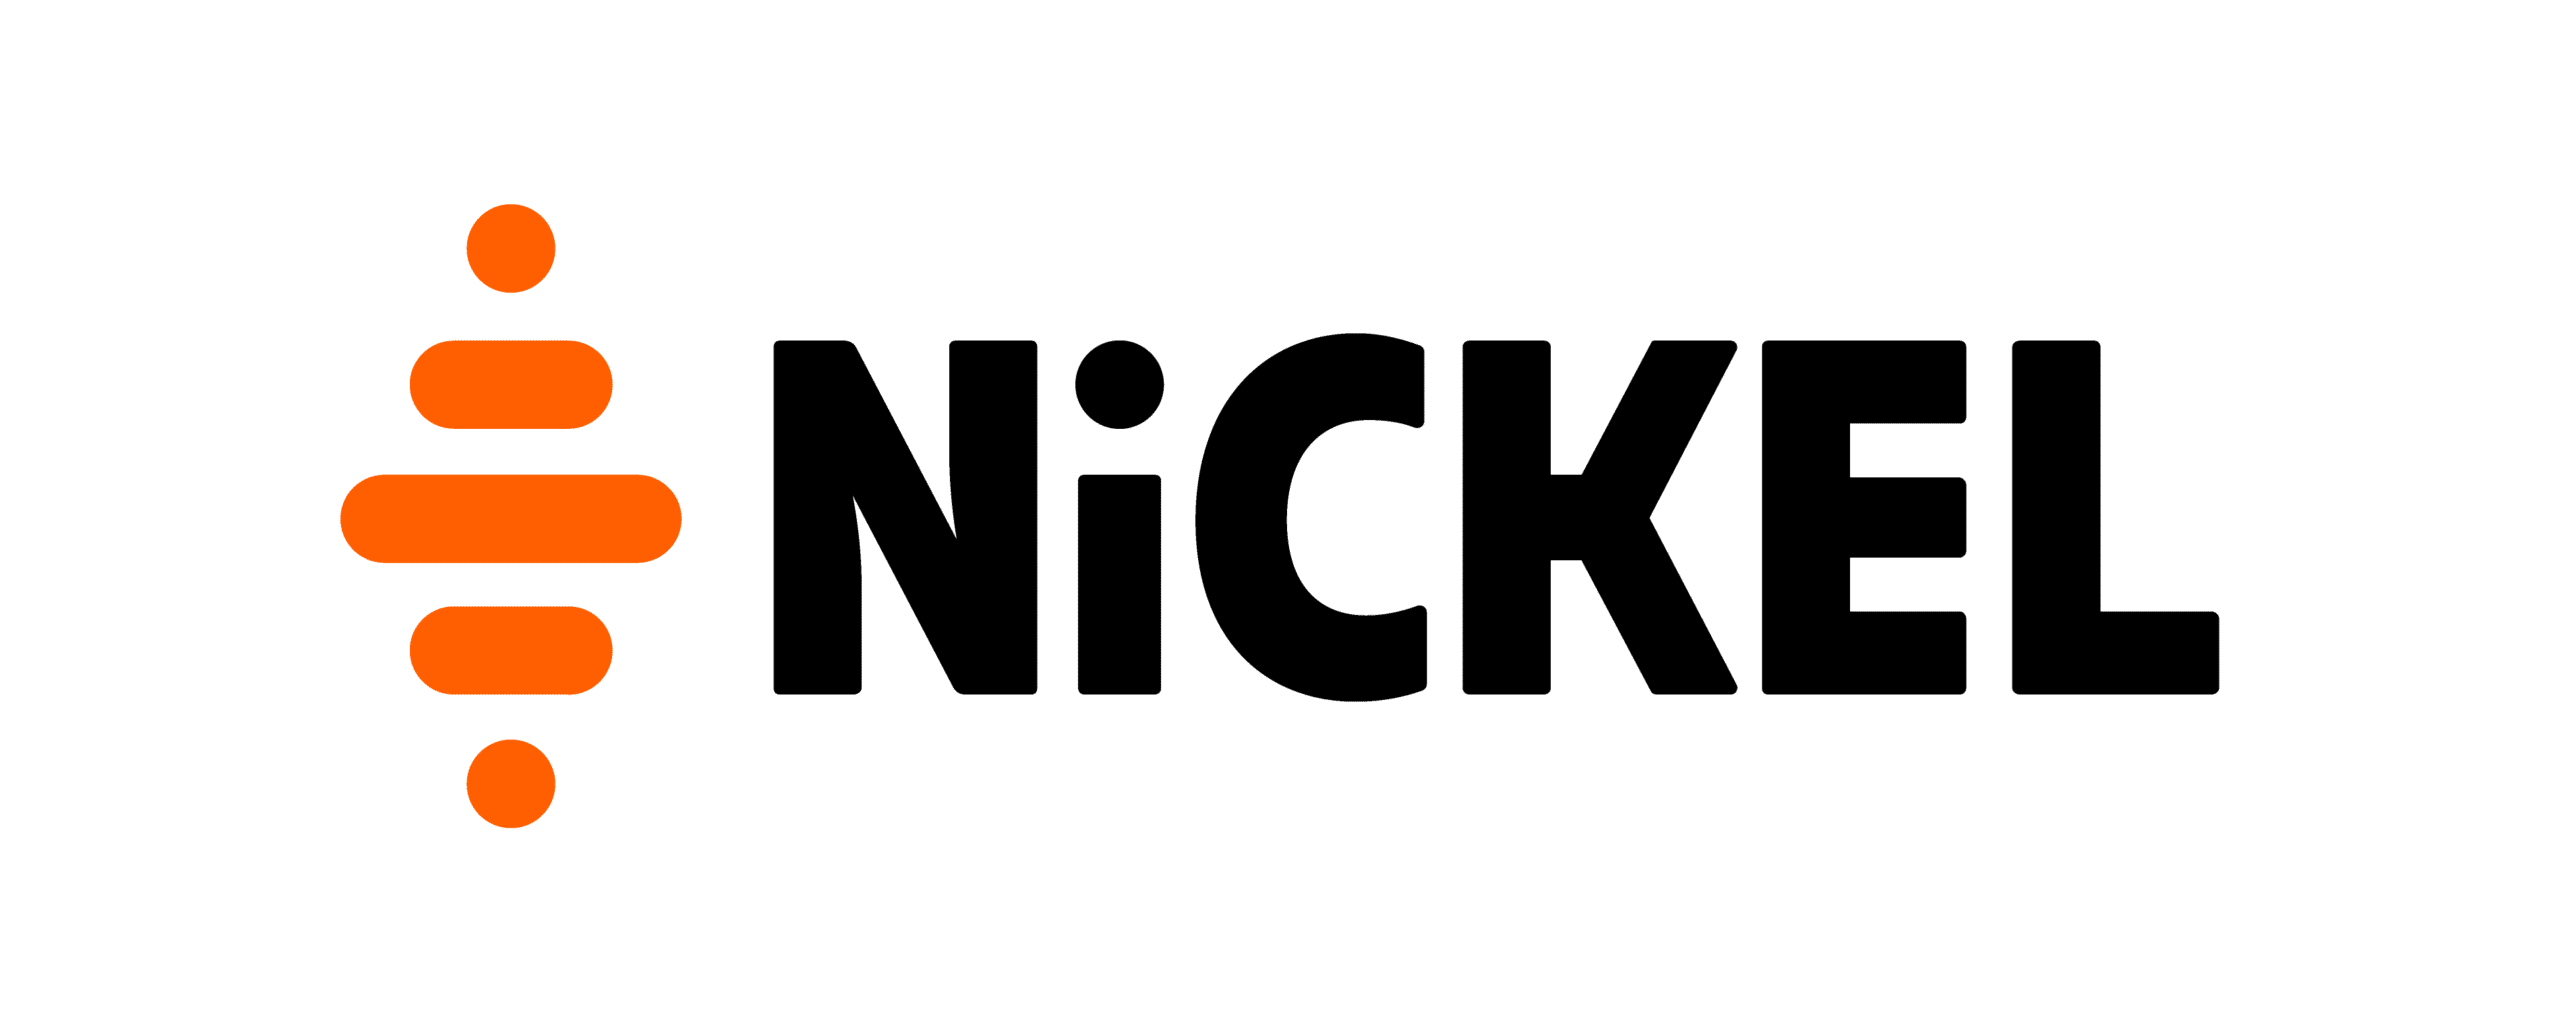 Nickel – Les opérateurs téléphoniques